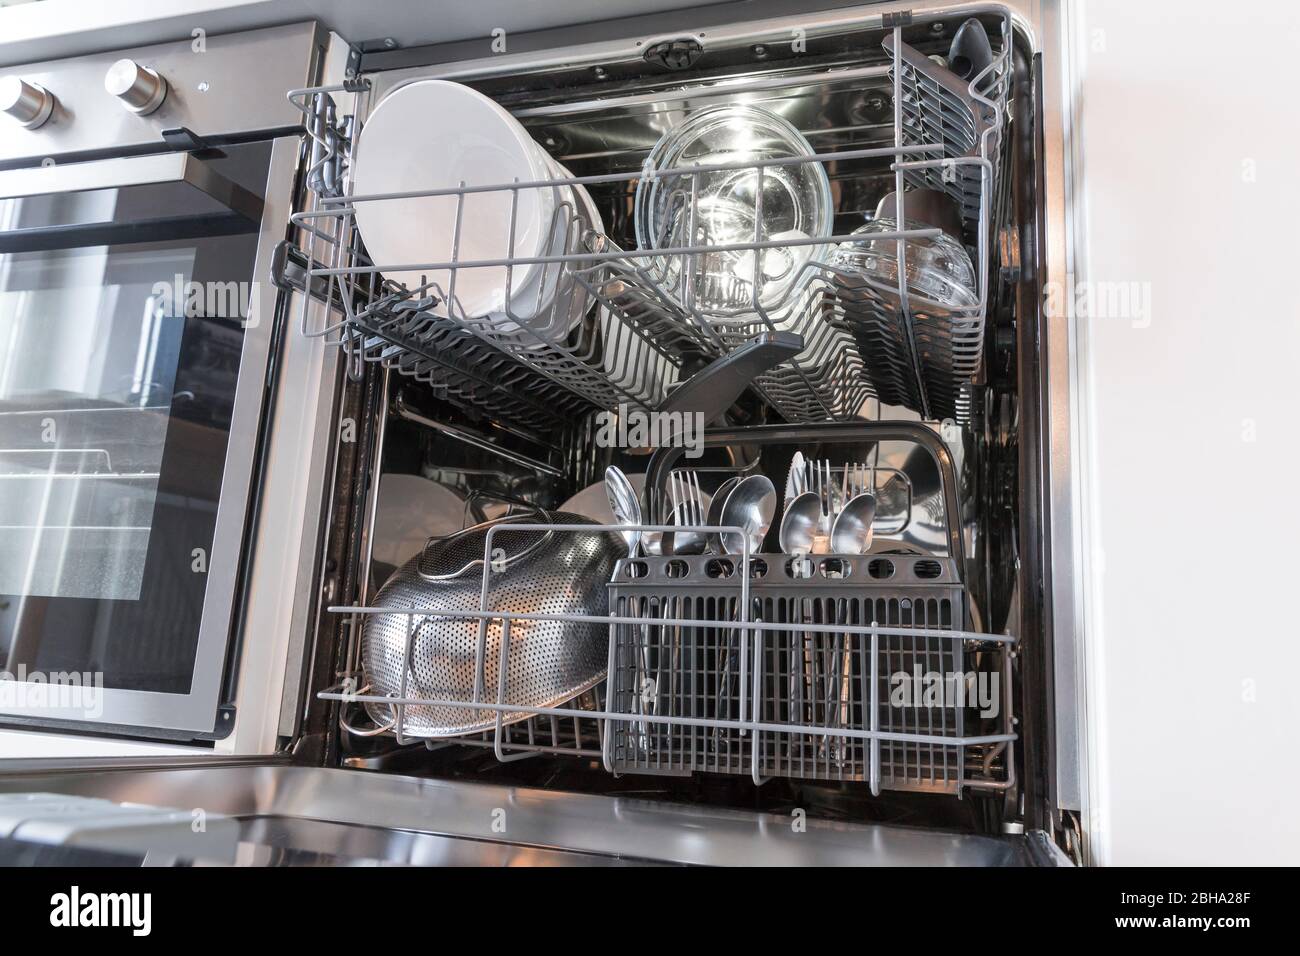 Ouvrez le lave-vaisselle avec des plats propres dans une cuisine blanche Banque D'Images